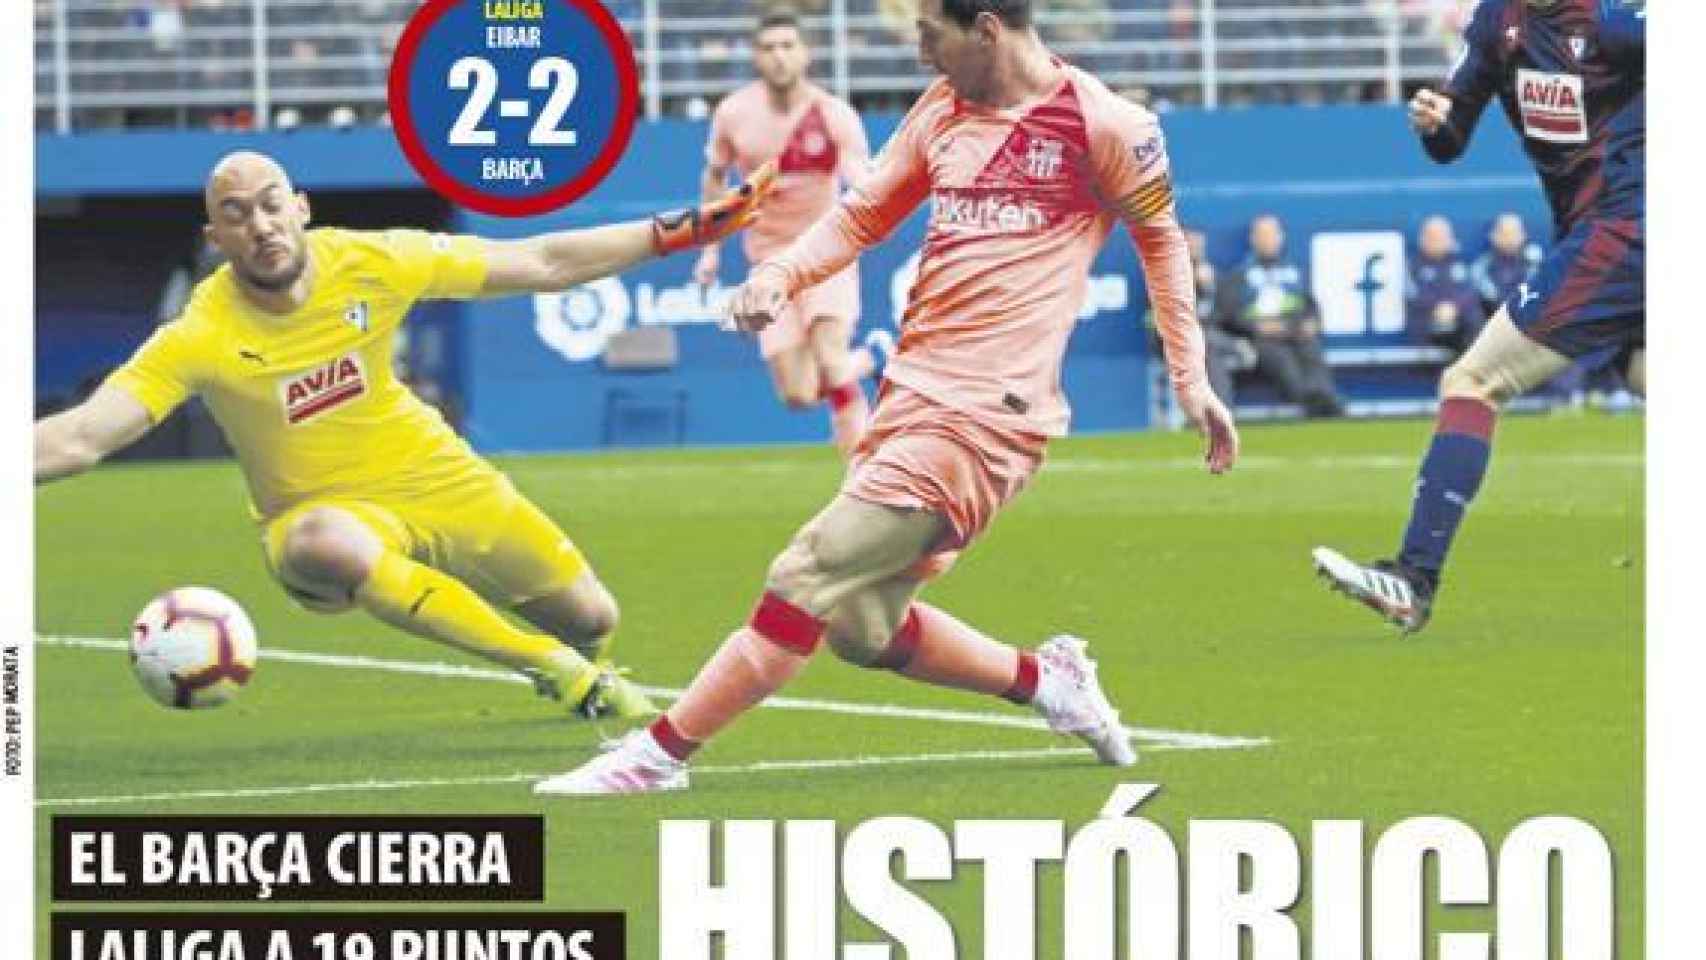 Portada Mundo Deportivo (20/05/2019)